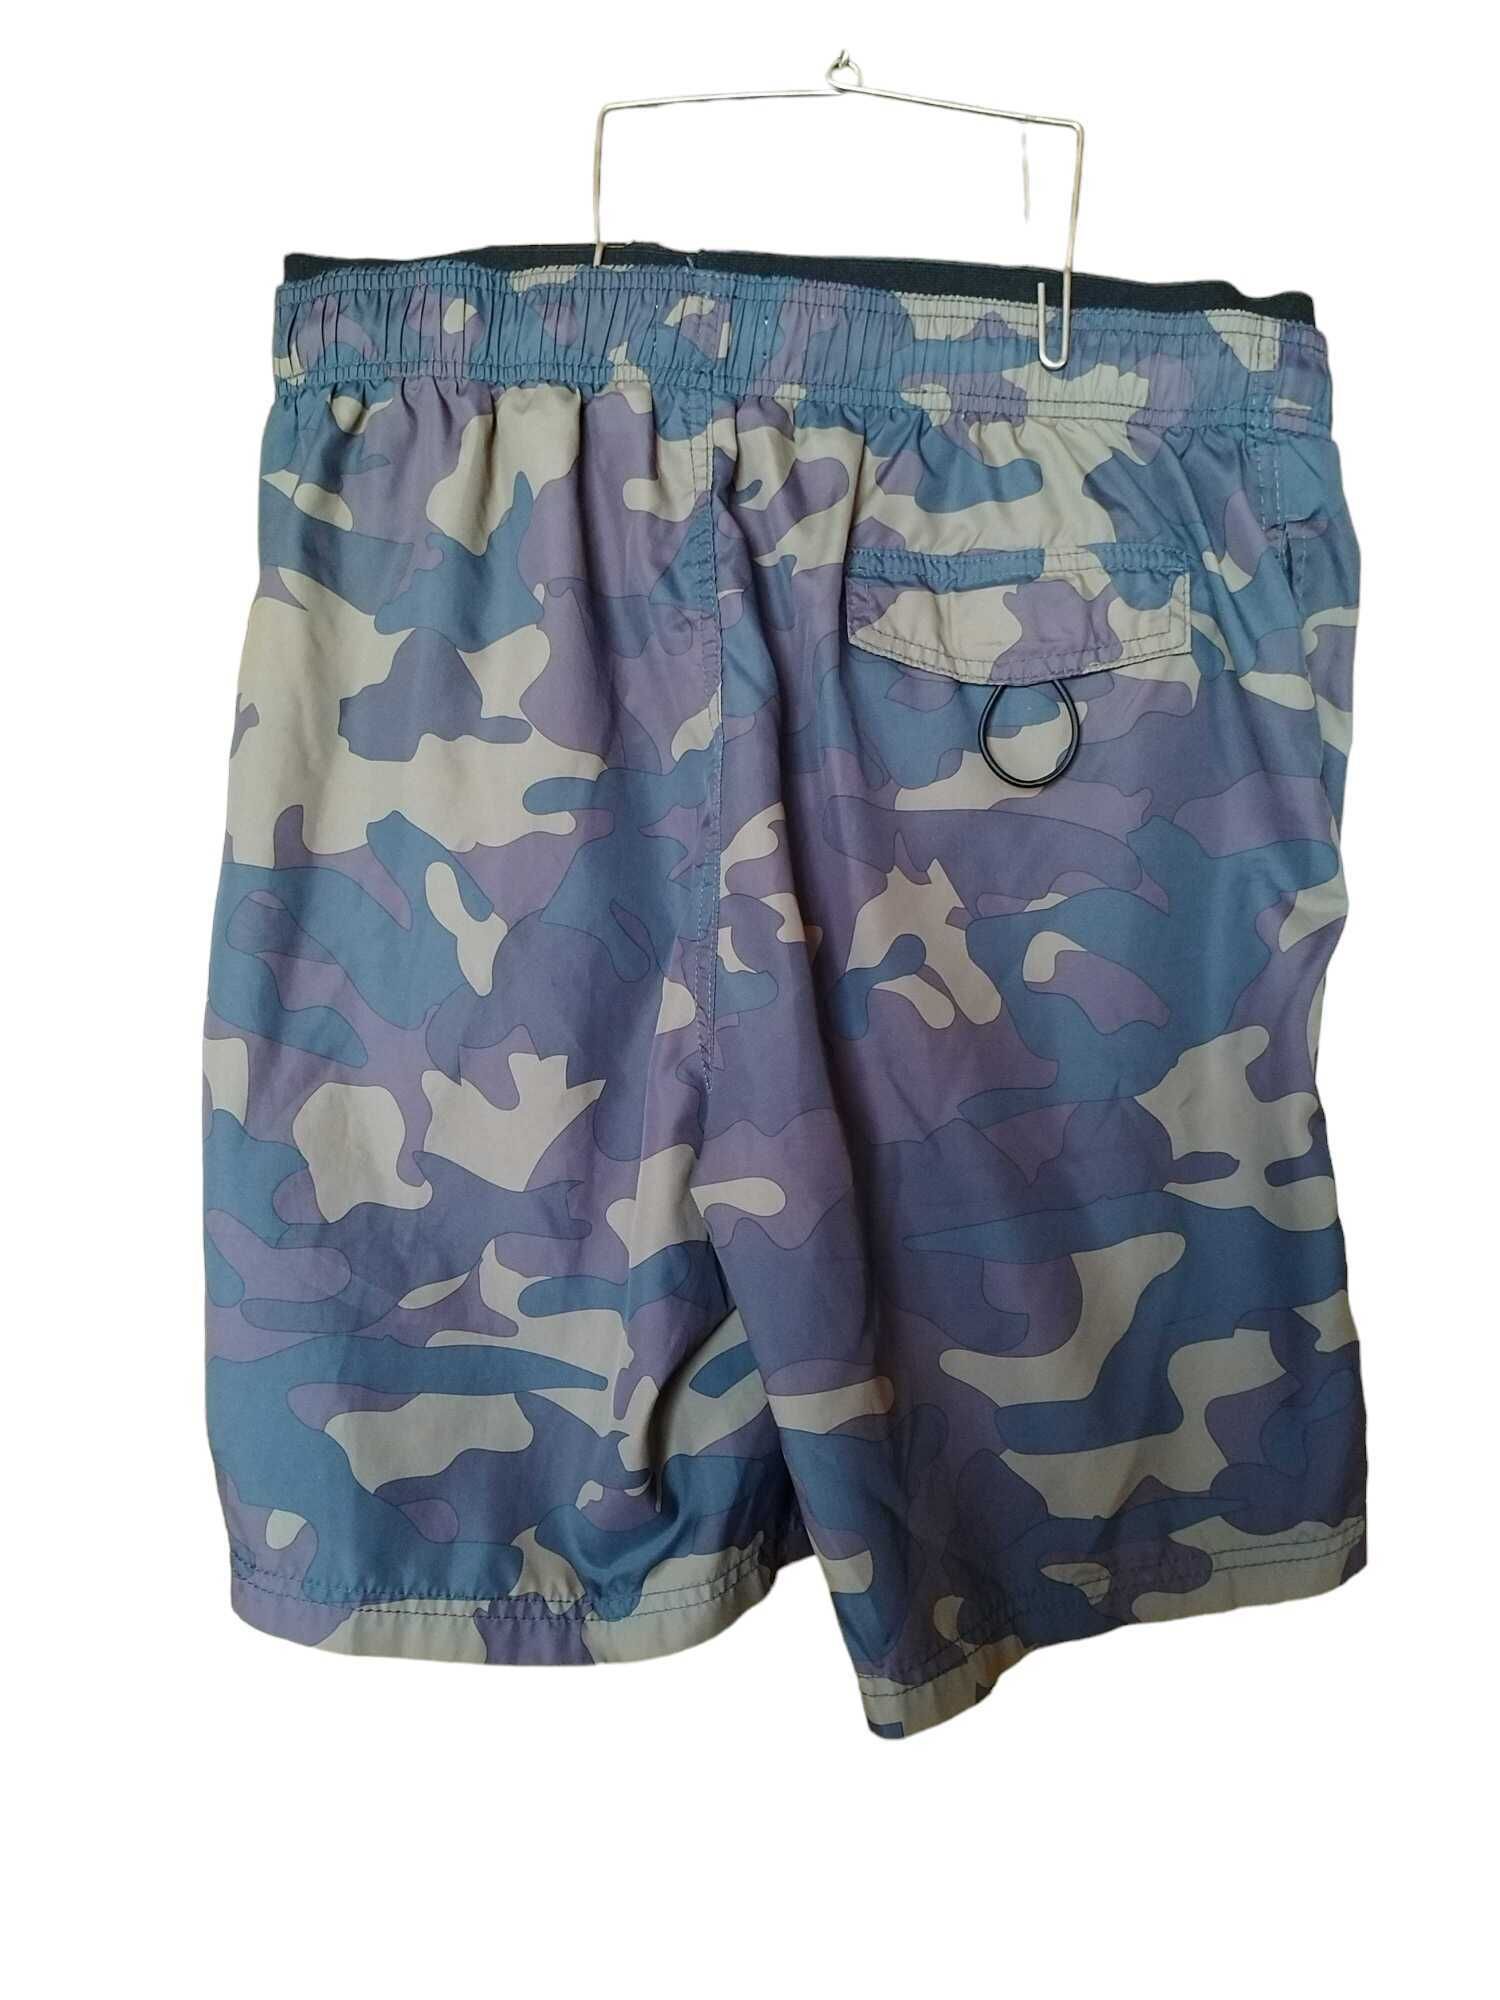 Мъжки шорти за плуване с надпис Zara, 100% полиестер, Каки, XL